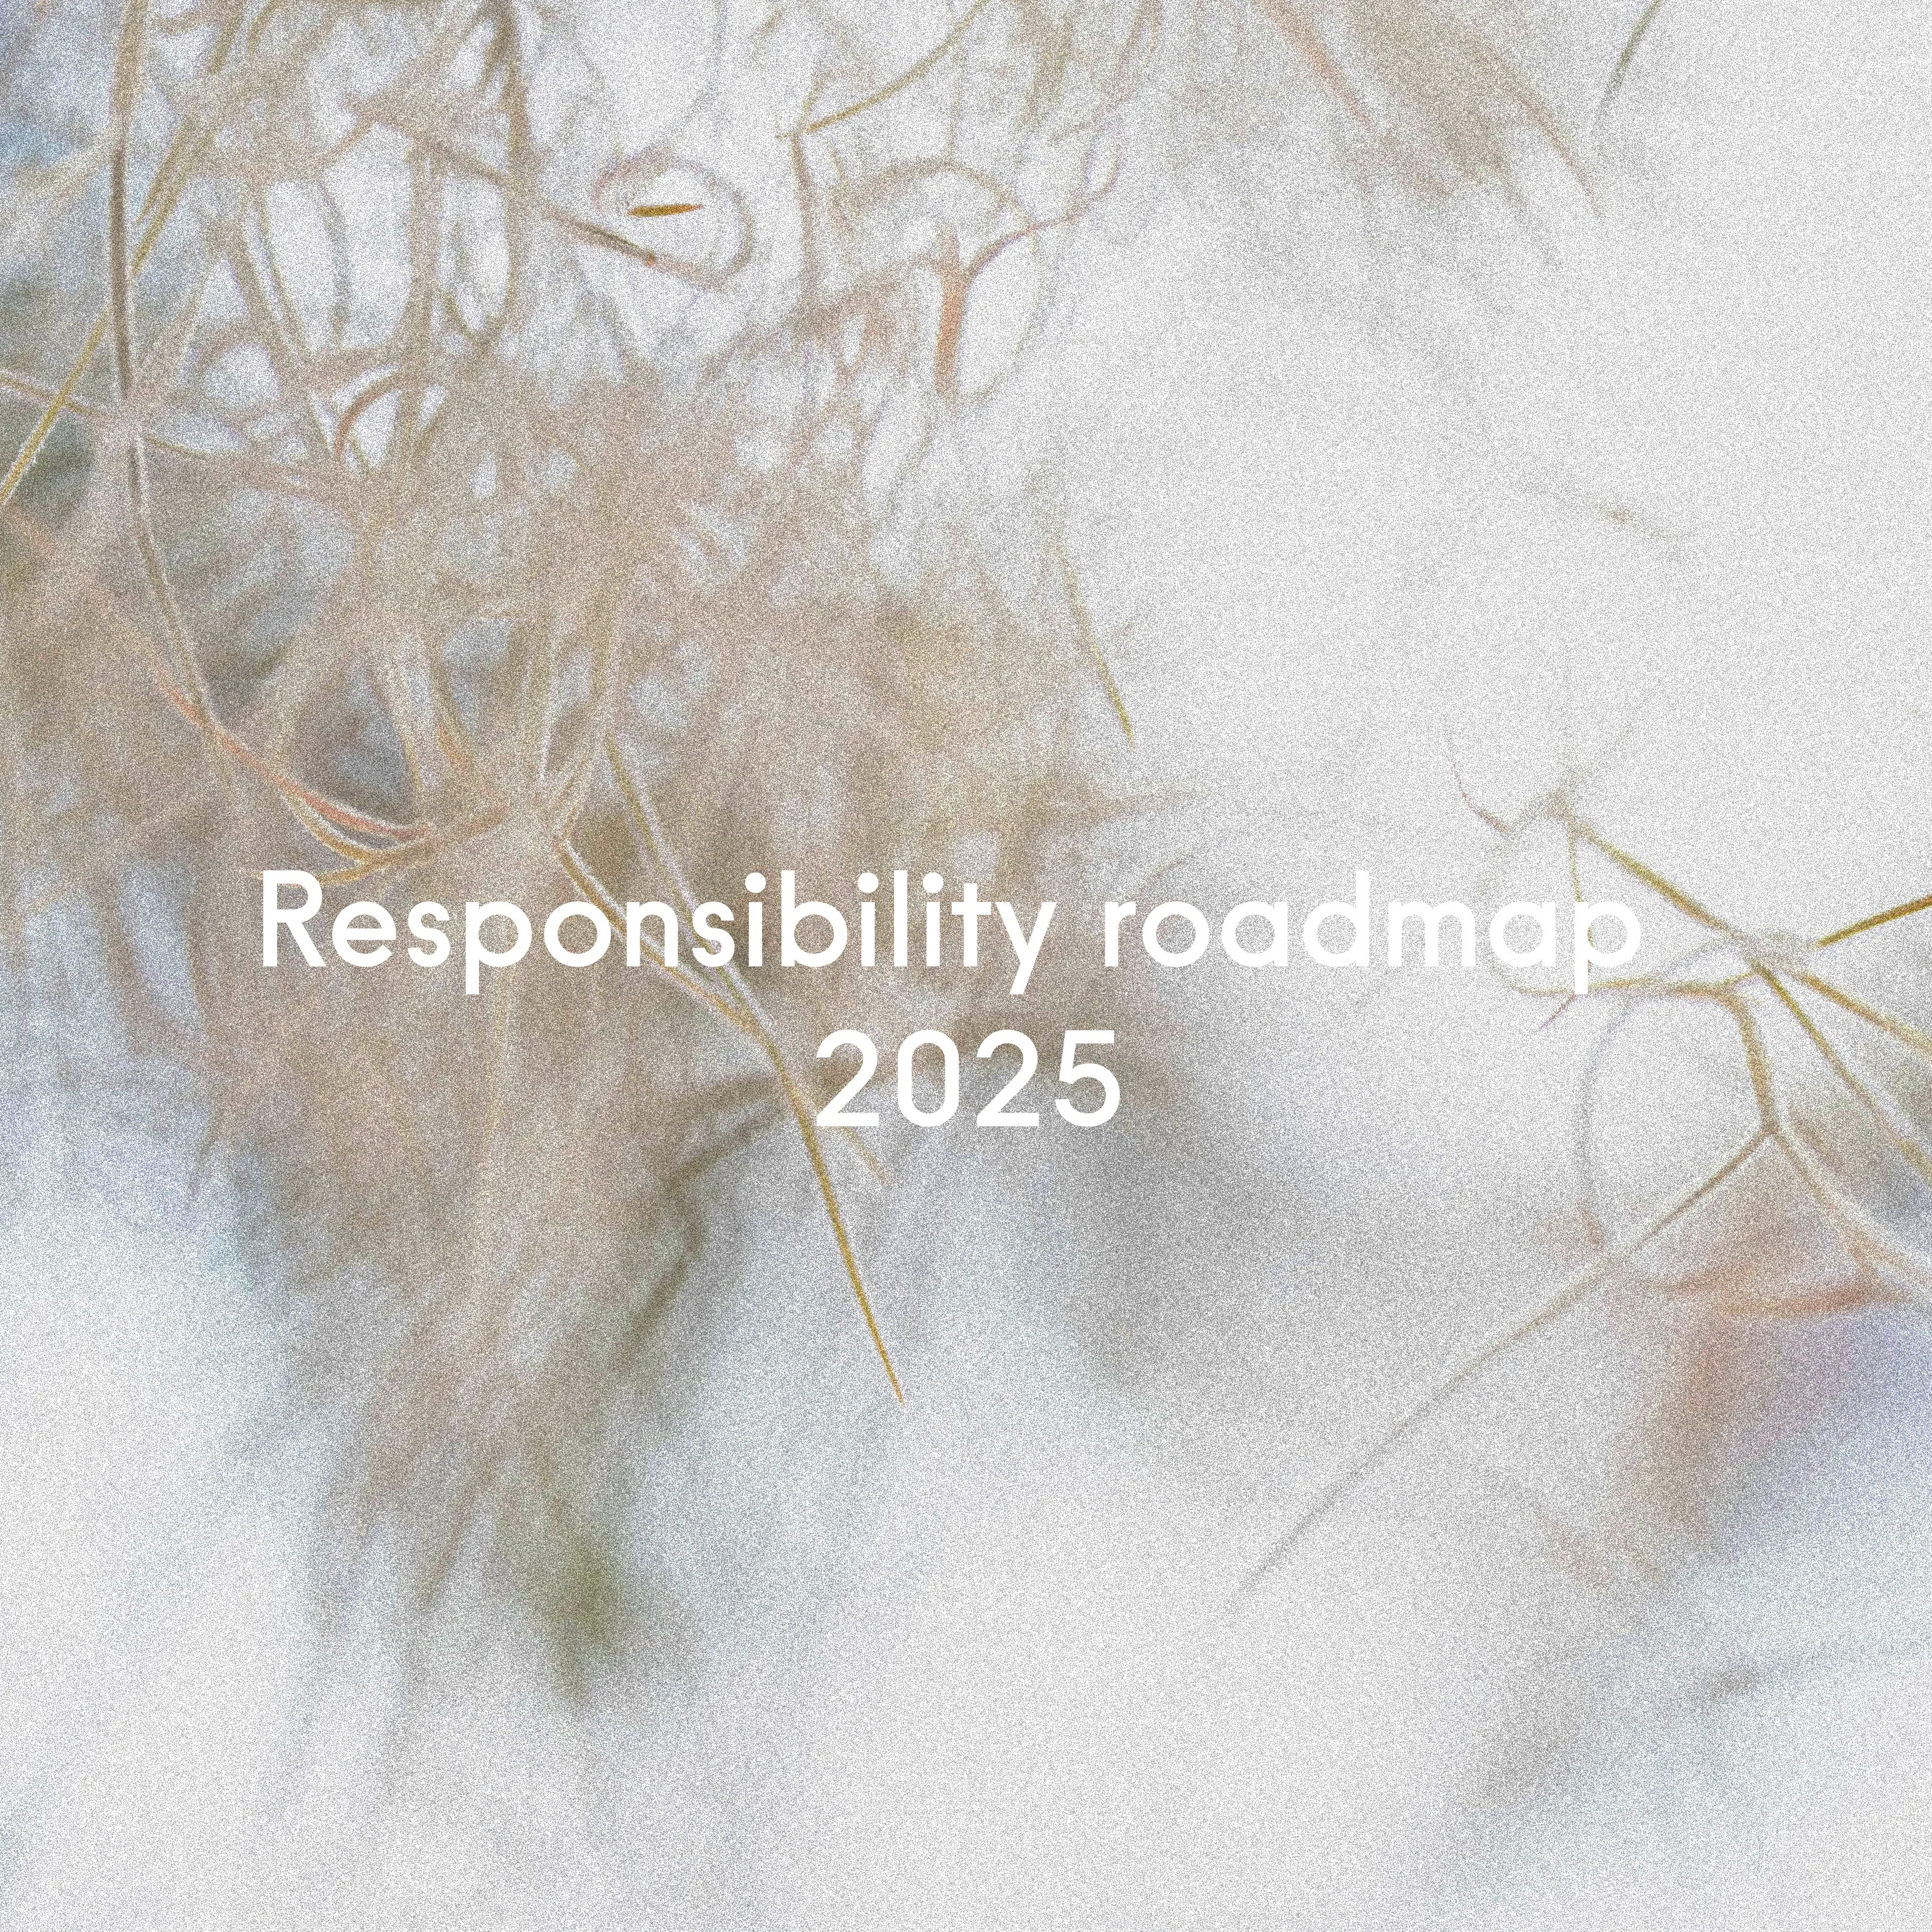 Roadmap 2025